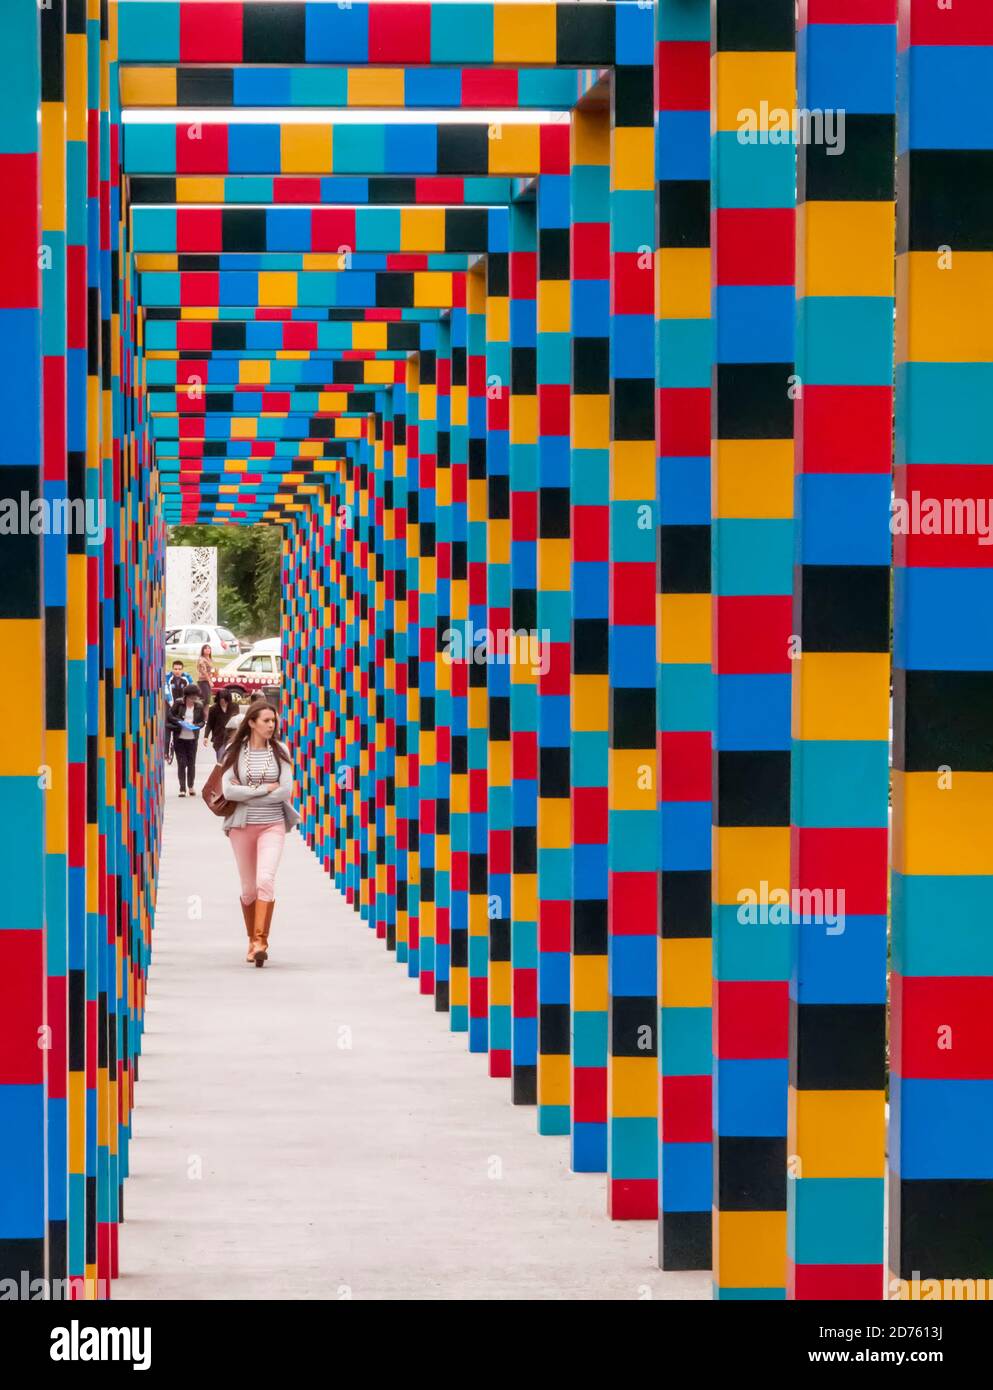 Colourful pedestrian passageway, Polanco, Mexico City, Mexico Stock Photo